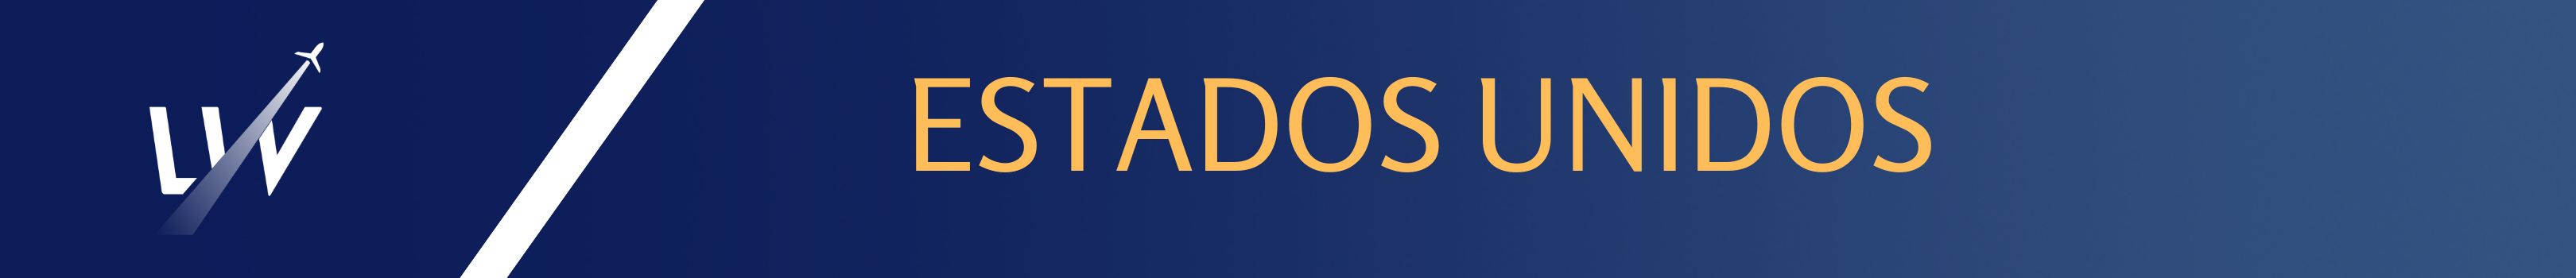 ESTADOS_UNIDOS